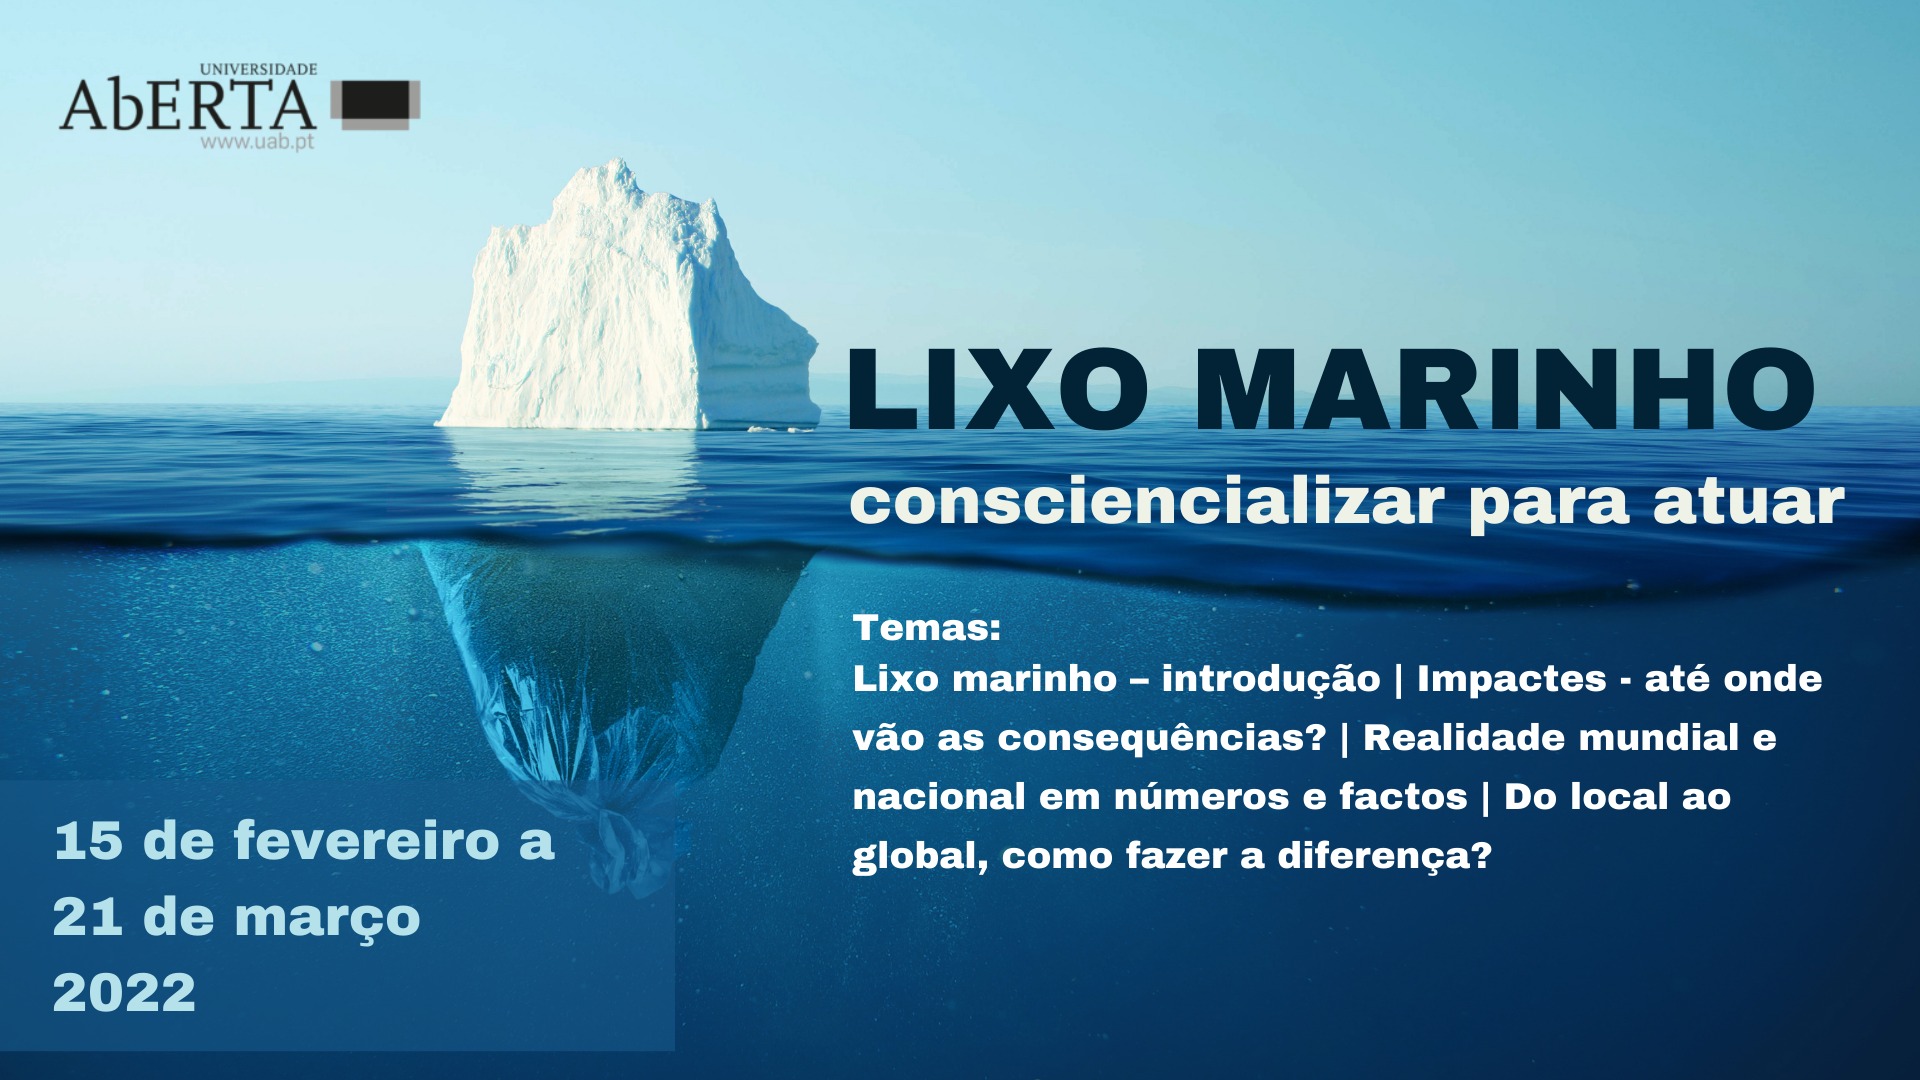 MOOC | "Lixo marinho: consciencializar para atuar"